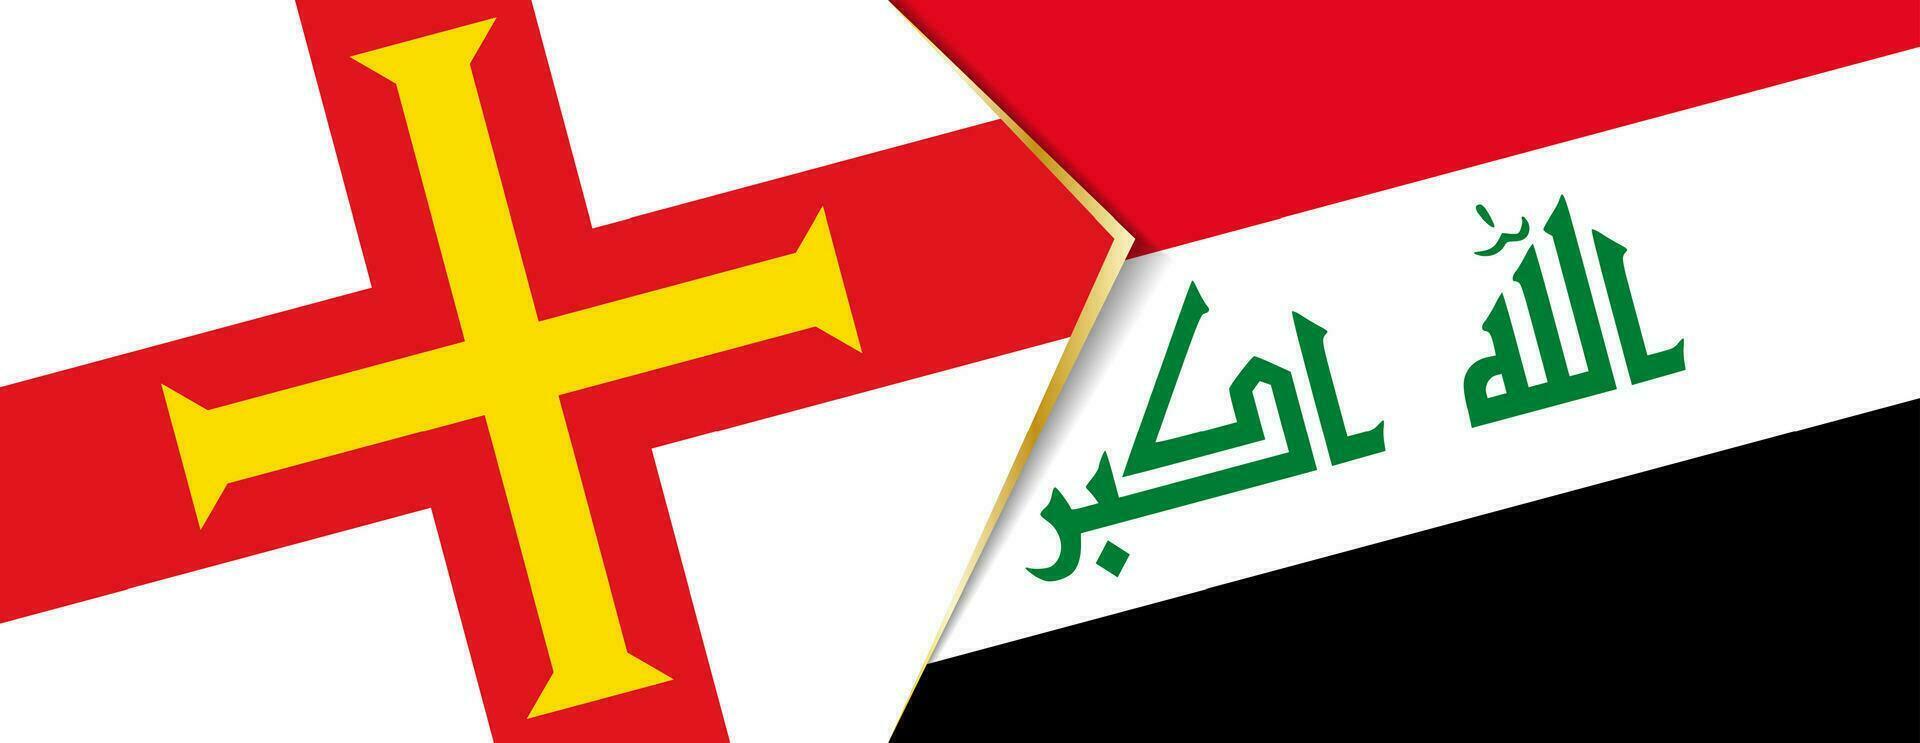 guernsey y Irak banderas, dos vector banderas